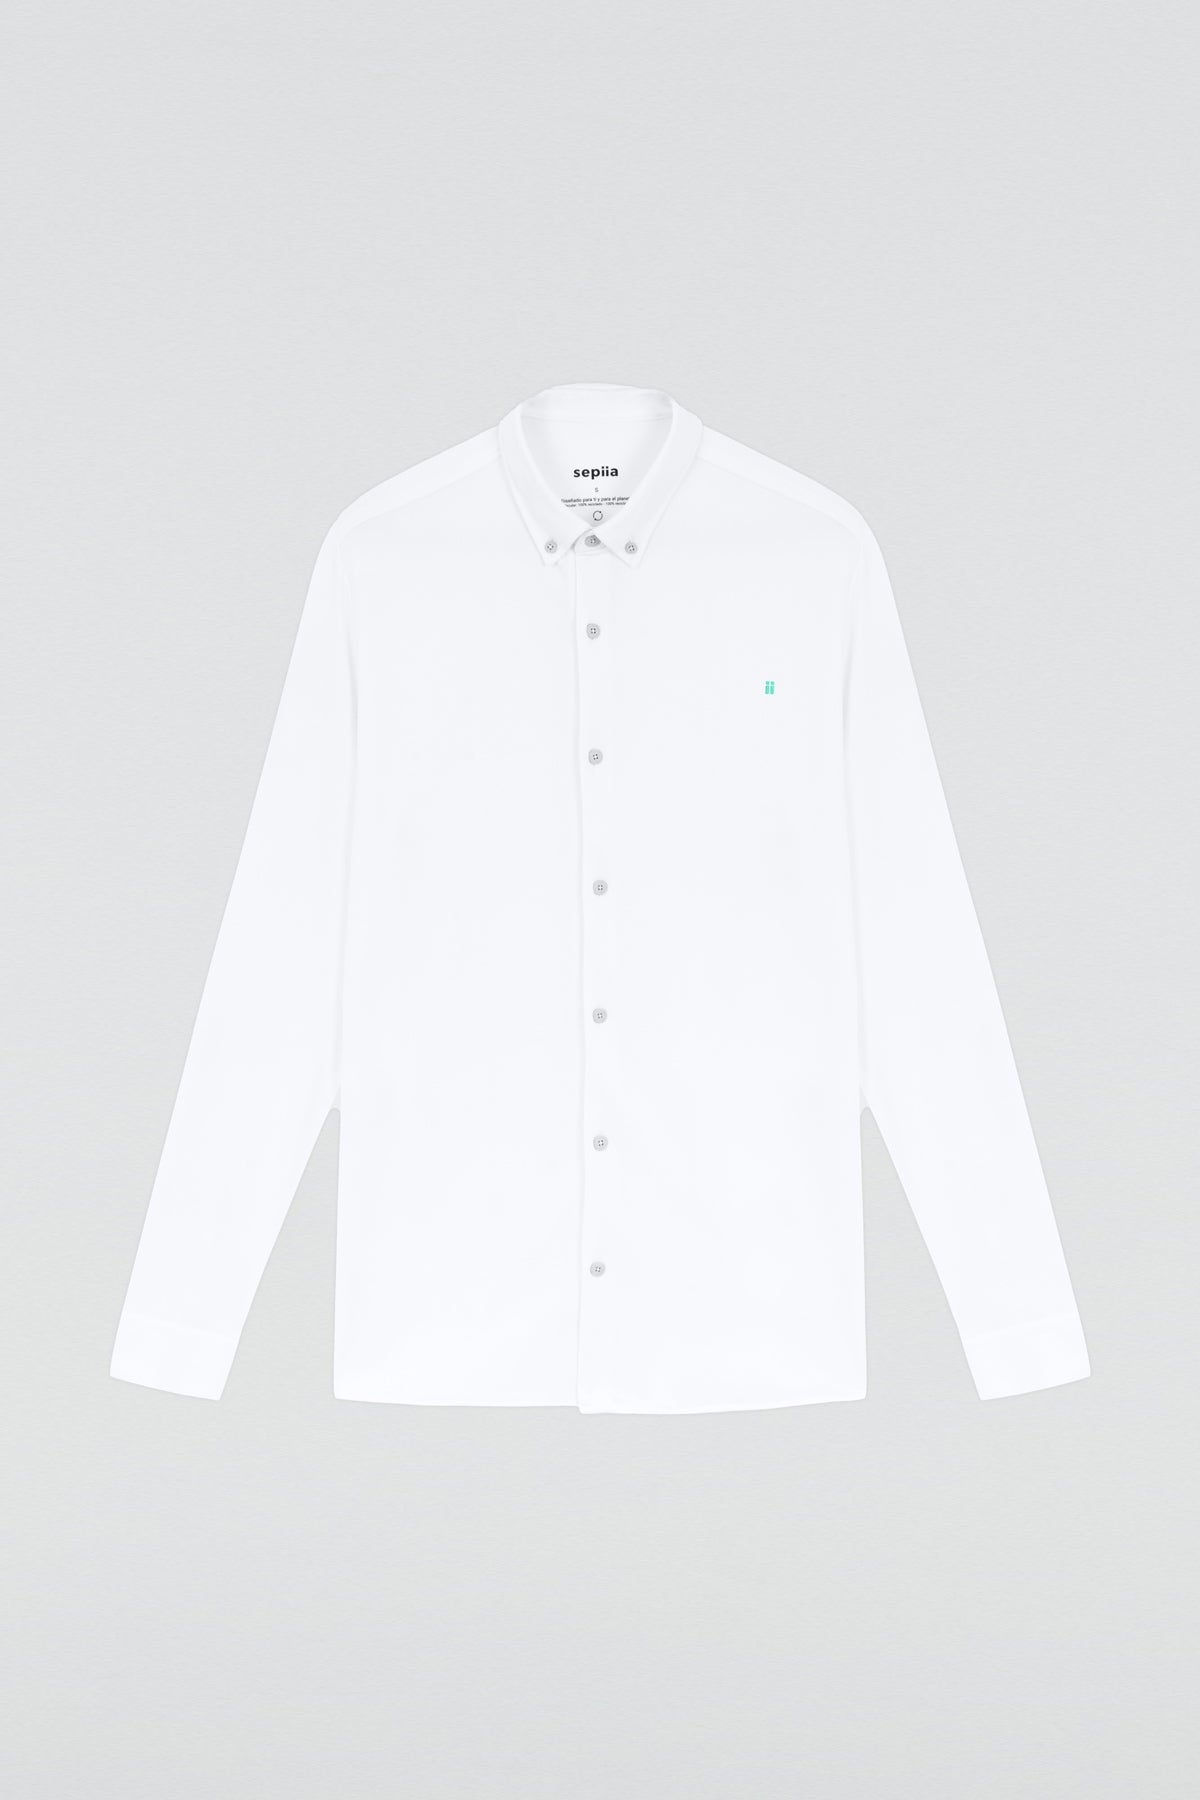 Camisa casual Blanco con logo para hombre sin arrugas ni manchas. Manga larga, antiarrugas y antimanchas. Foto prenda en plano